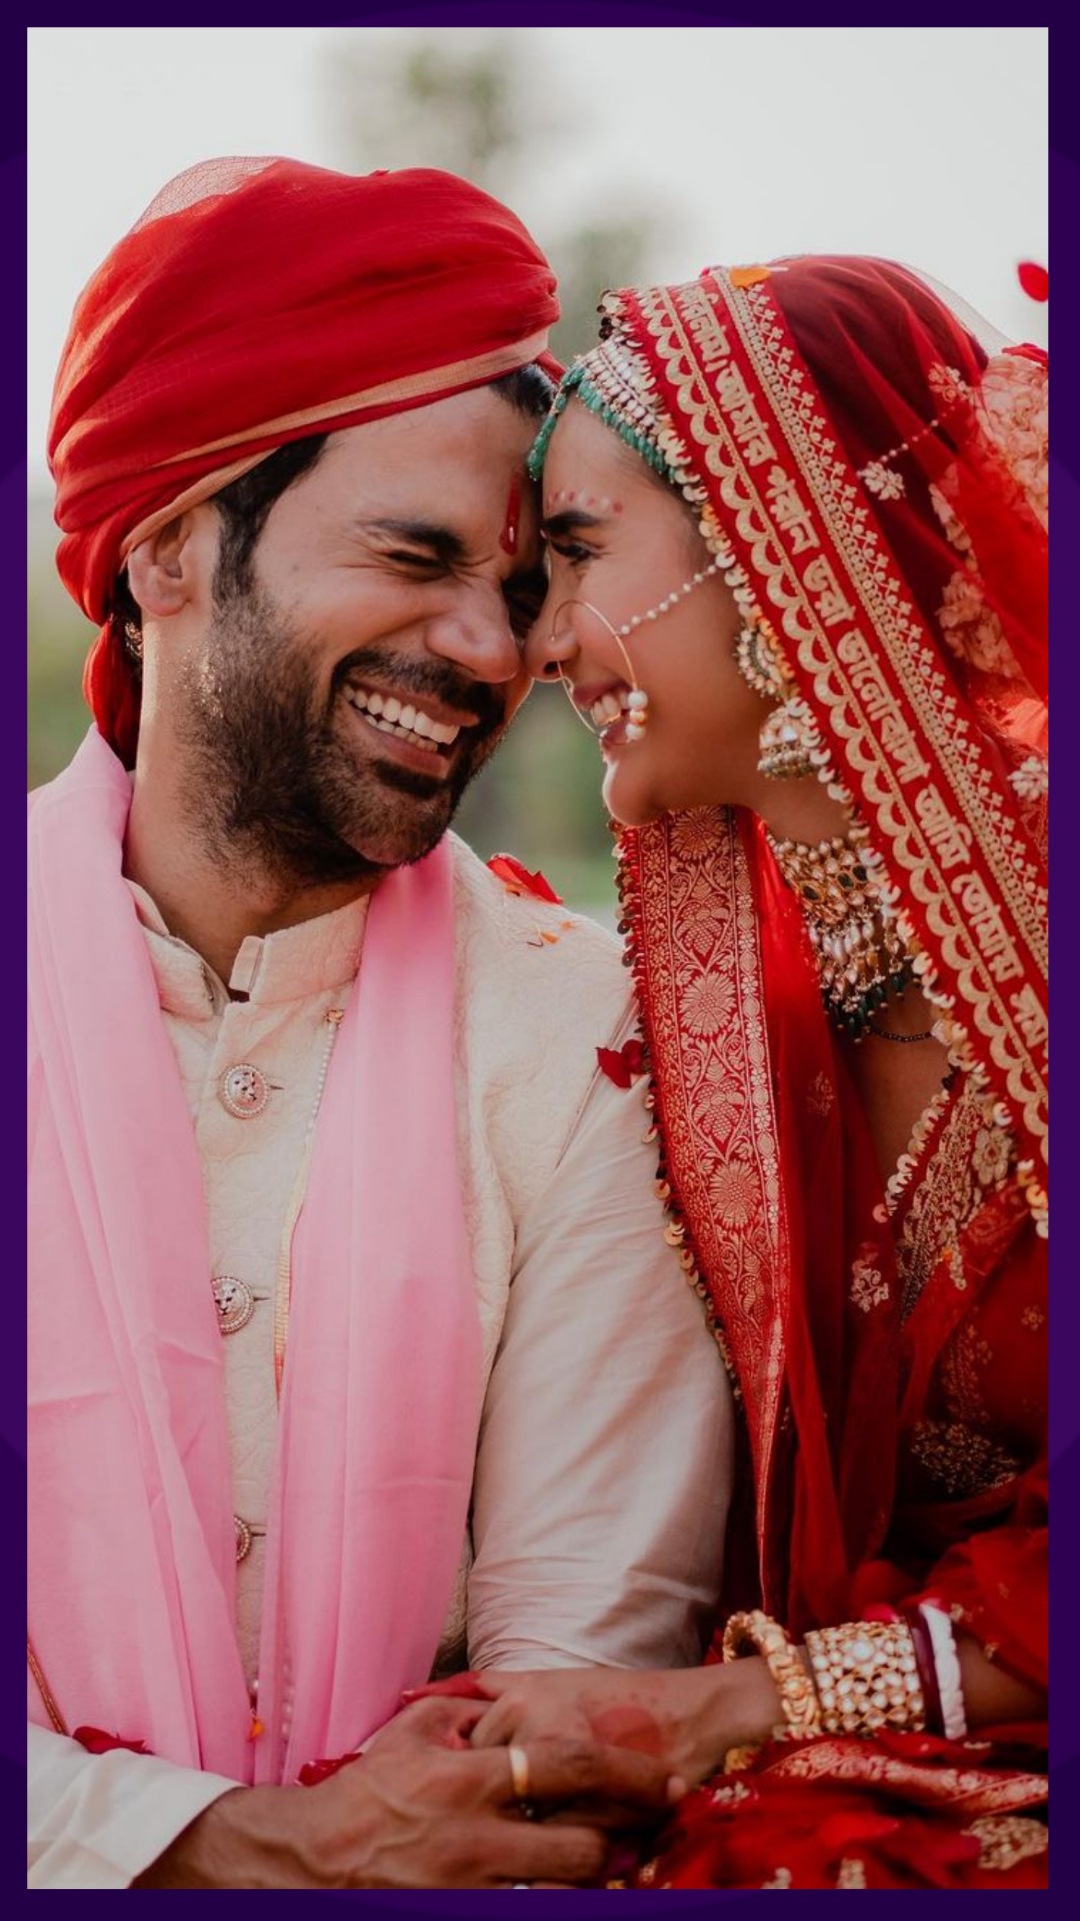 Rajkummar And Patralekhaa First Anniversary: शादी की पहली सालगिरह पर पत्रलेखा के लिए राजकुमार राव ने कही ये बात